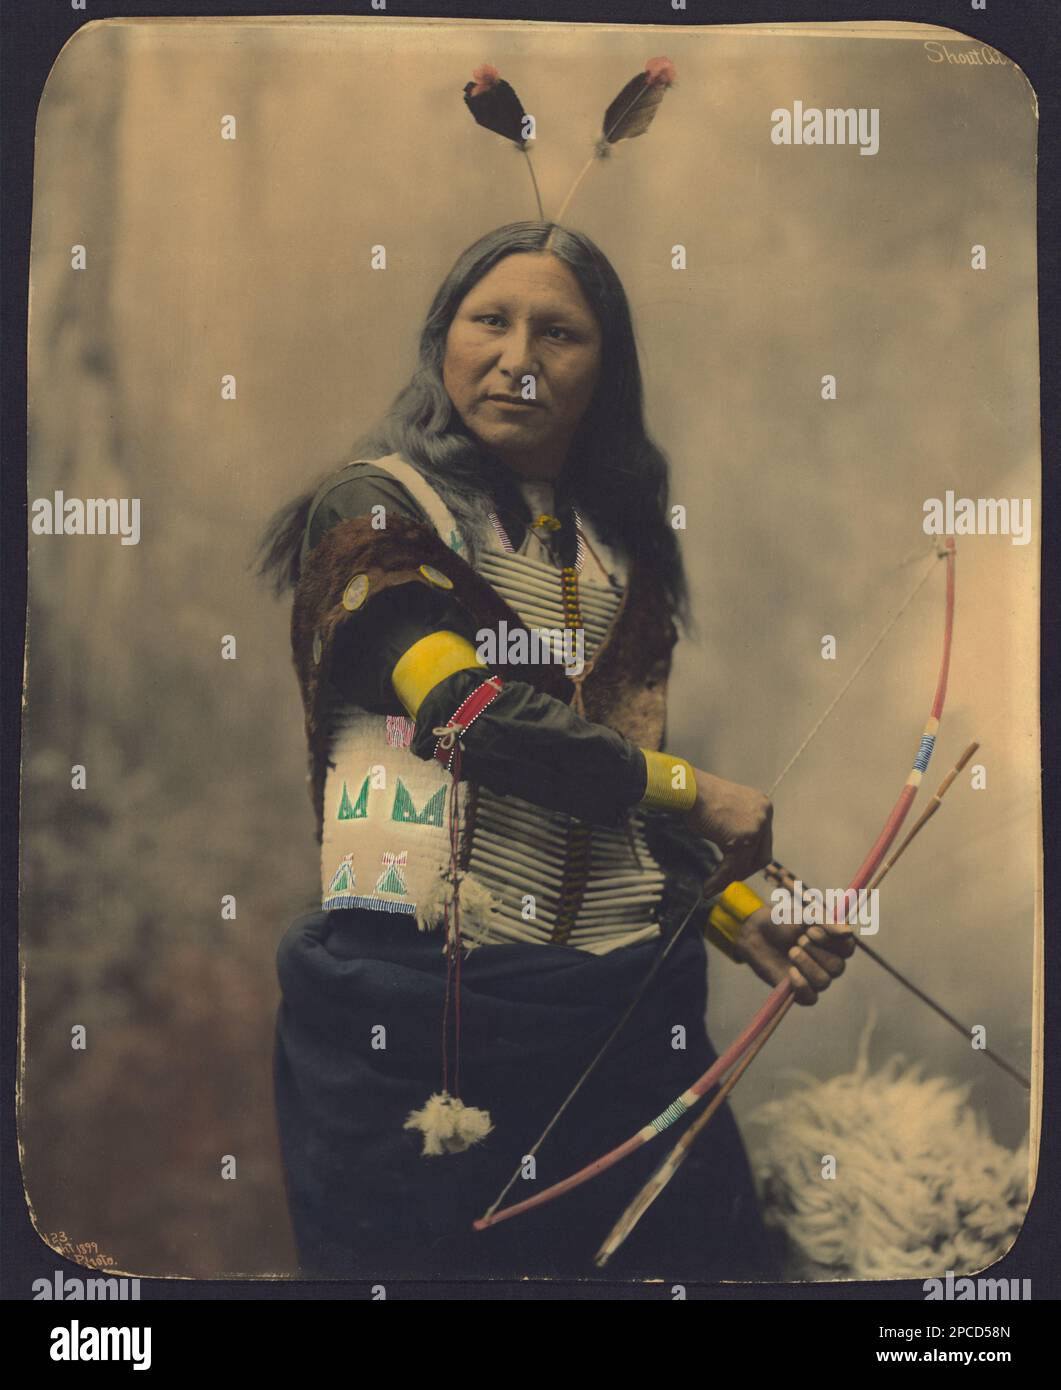 1899 , USA : Native American CHIEF Shout a di SIOUX . Foto di Heyn Photo, Omaha , Nebrasca . - STORIA - foto storiche - foto storica - indiani - INDIANI D' AMERICA - PELLEROSSA - nativi americani - indiani d'America del Nord - indiani d'America del Nord - CAPO TRIBU' INDIANO - GUERRIERO - GUERRIERO - ritratto - ritratto - arco e freccie - stiffs - arciere - arciere - SELGAGGIO WEST - piuma - piume - piume - ---- Archivio GBB Foto Stock